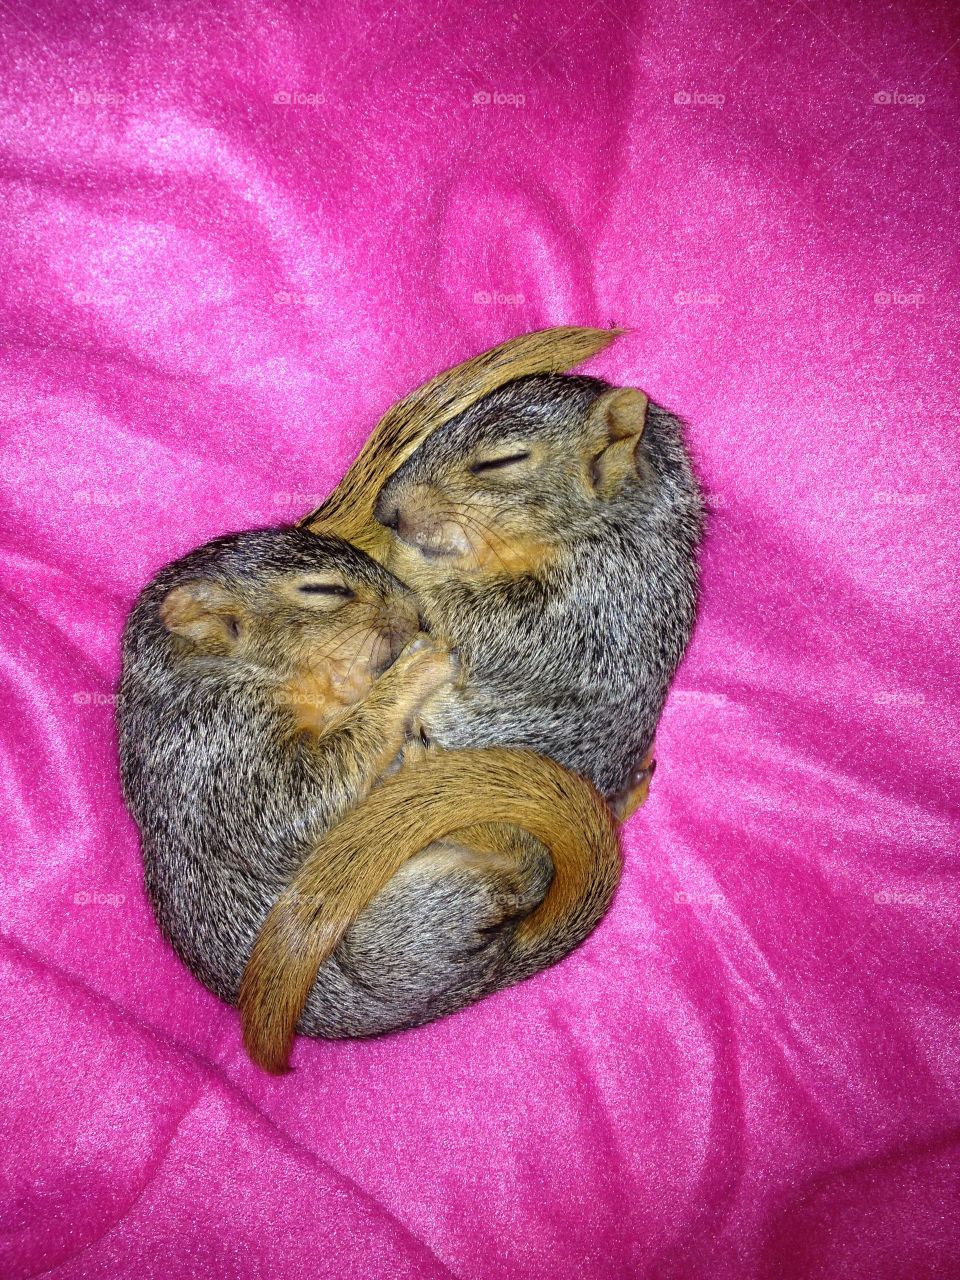 Squirrel nap